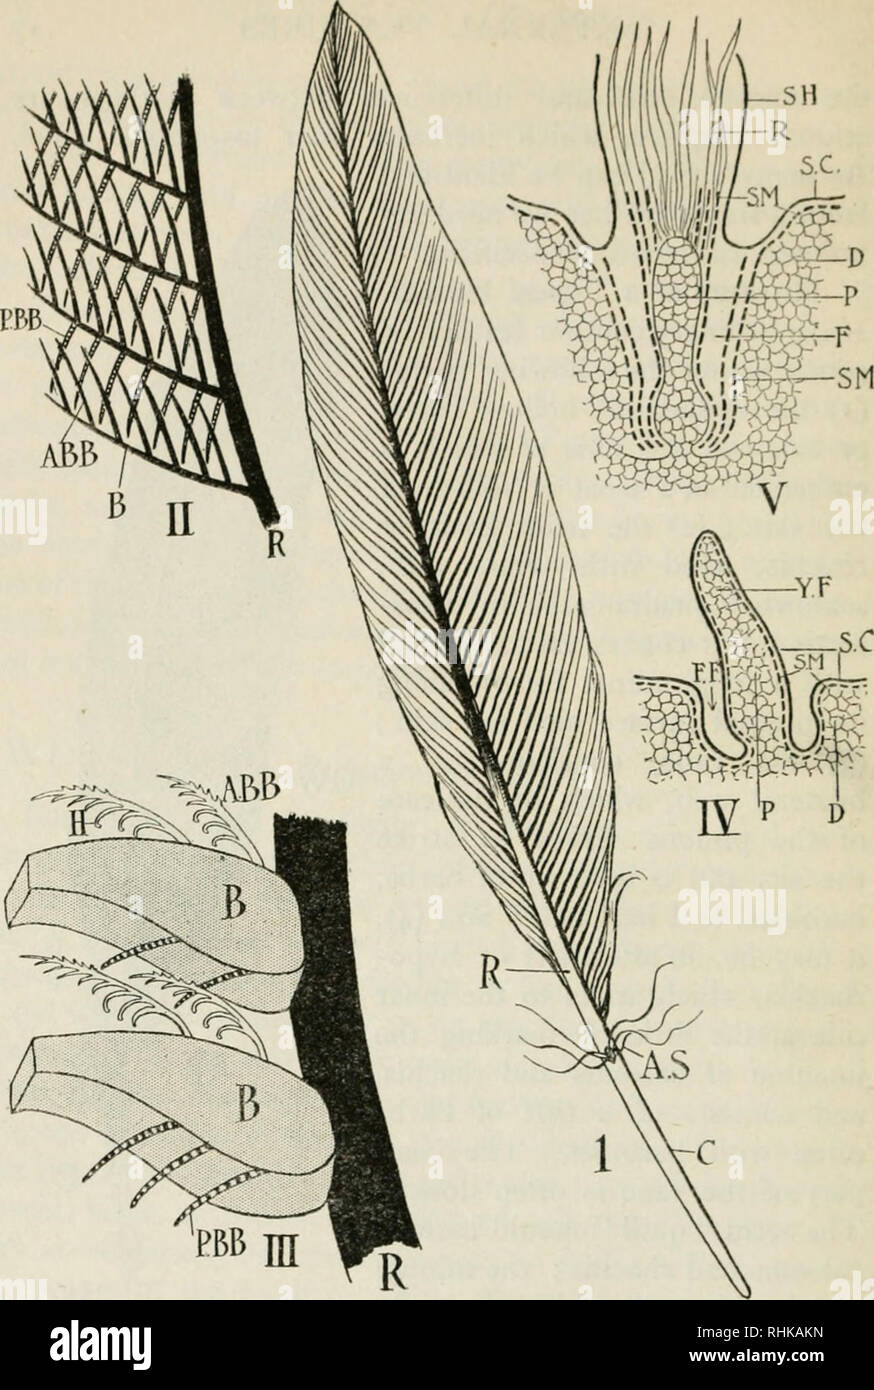 La biología de las aves. Las aves. Fig. 2.'-estructura y desarrollo de las  plumas (diagramación). I. Un piñón ordinaria; c, calamus o el árbol hueco;  A.S., aftershaft; u., rhachis. II. Una